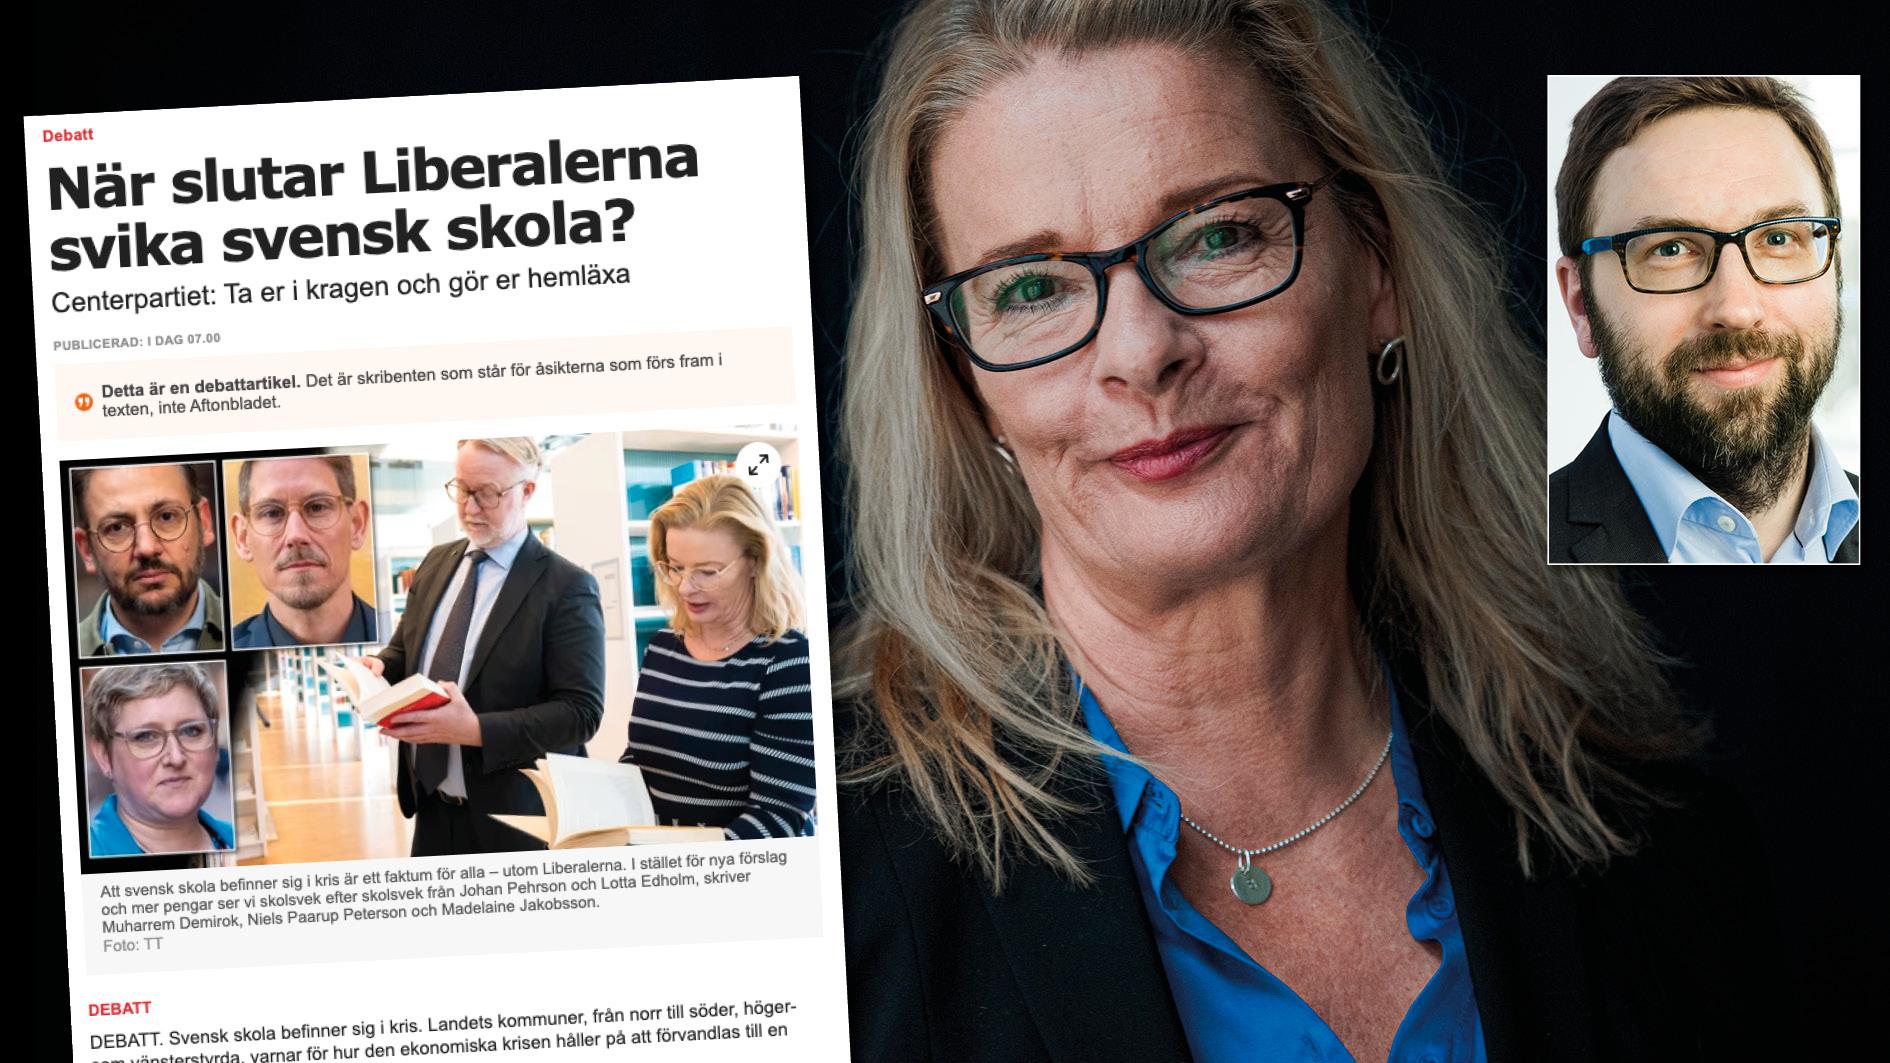 Centerpartiet säger att vi behöver göra vår hemläxa, men har inte bemödat sig med att sopa rent framför sin egen dörr. Replik från Lotta Edholm och Fredrik Malm.